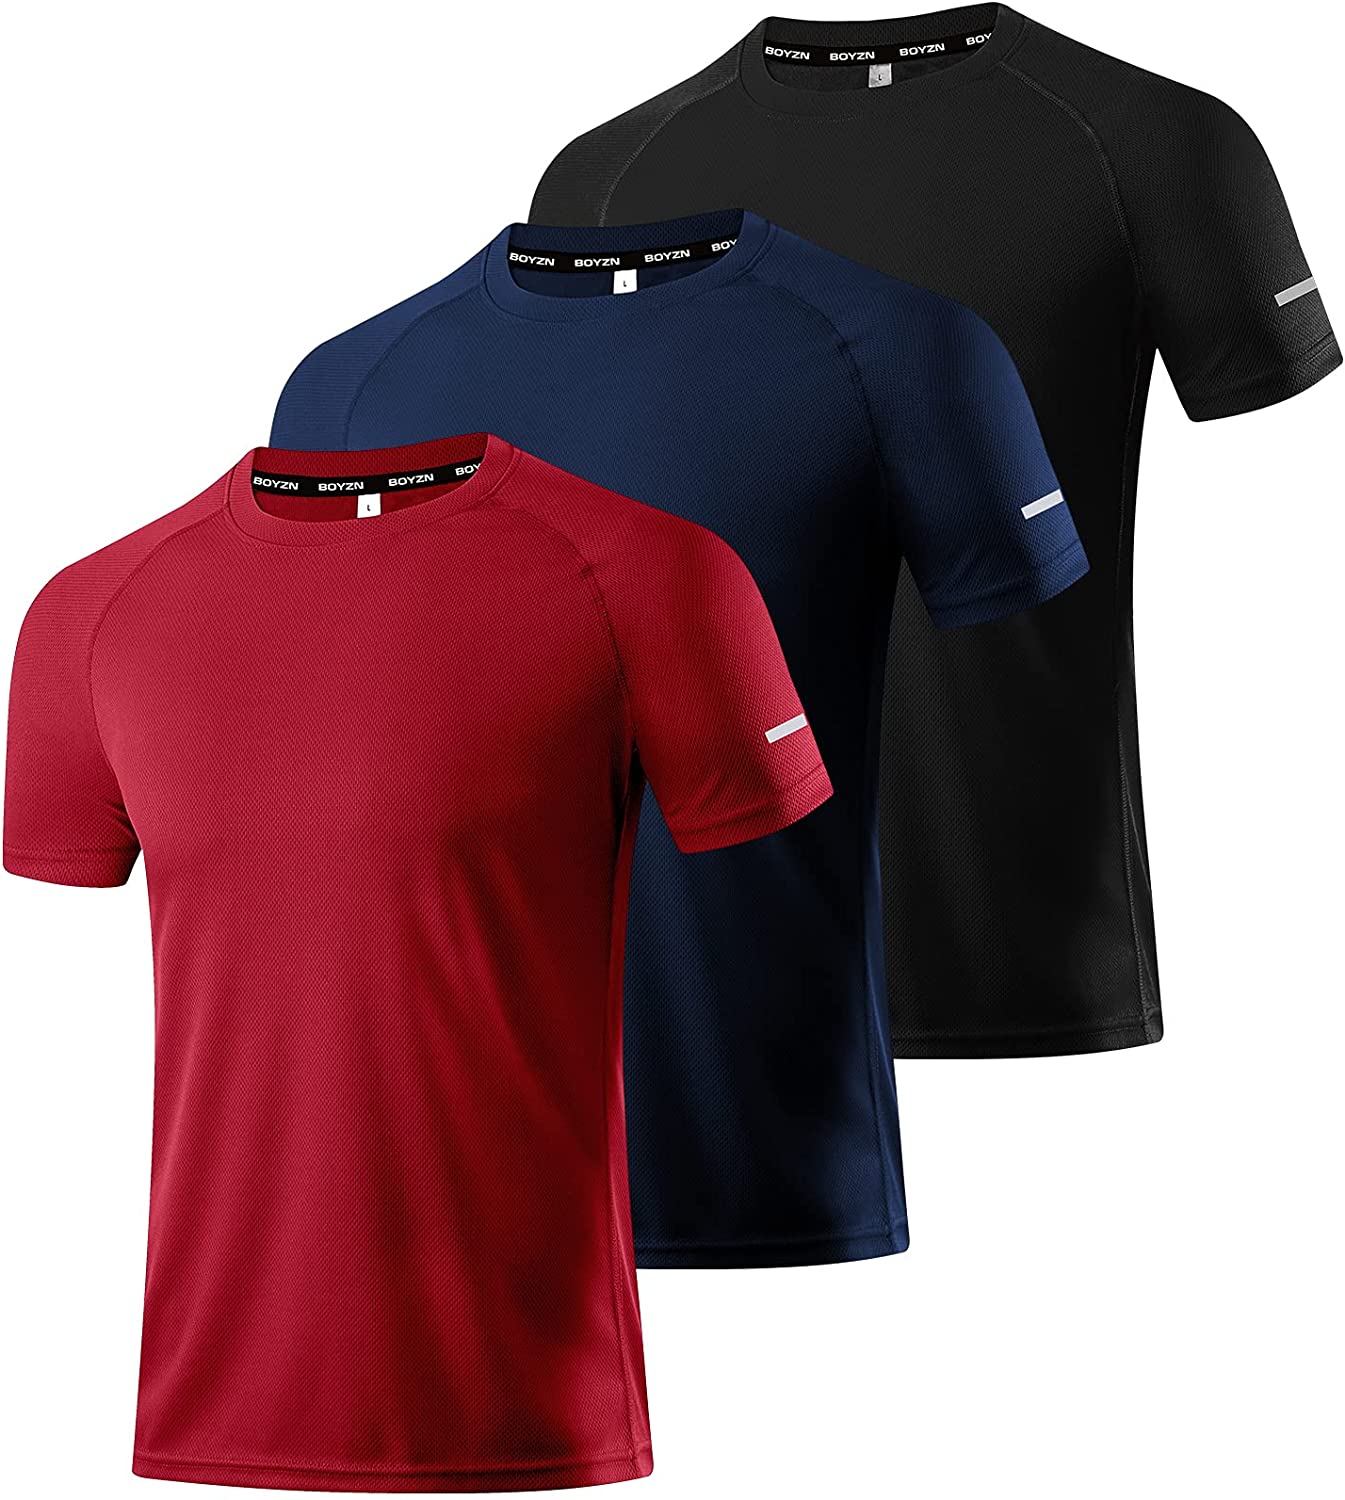 TEXFIT Men's 3 Pack Active Sport Quick Dry T-Shirts 